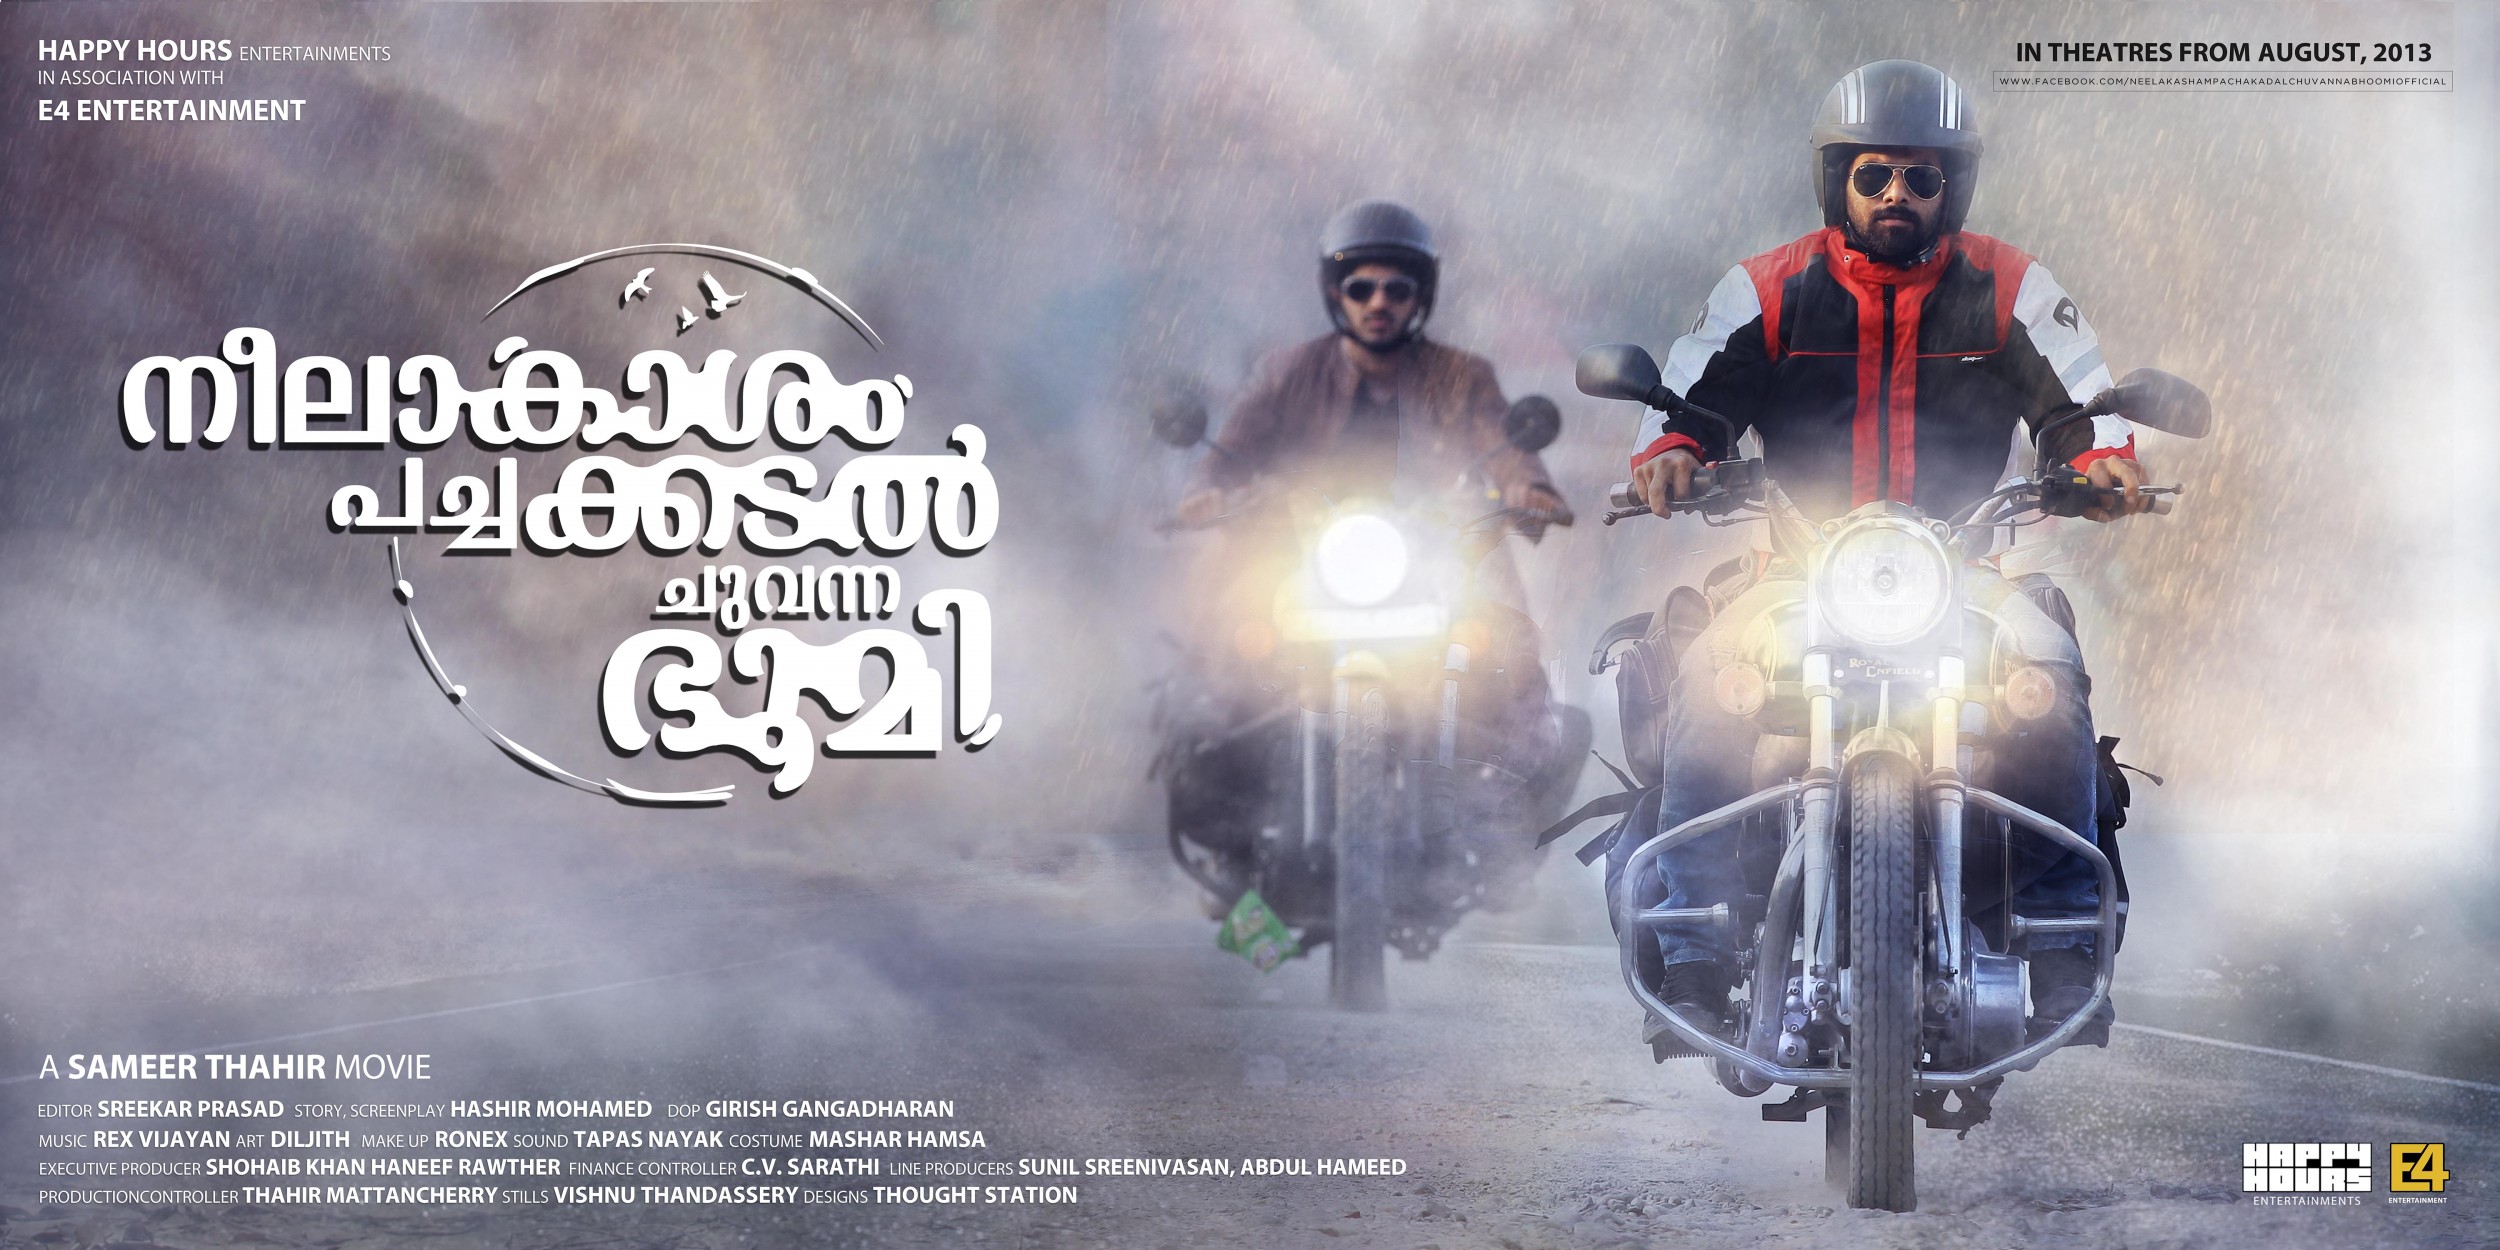 Mega Sized Movie Poster Image for Neelakasham Pachakadal Chuvanna Bhoomi (#15 of 15)